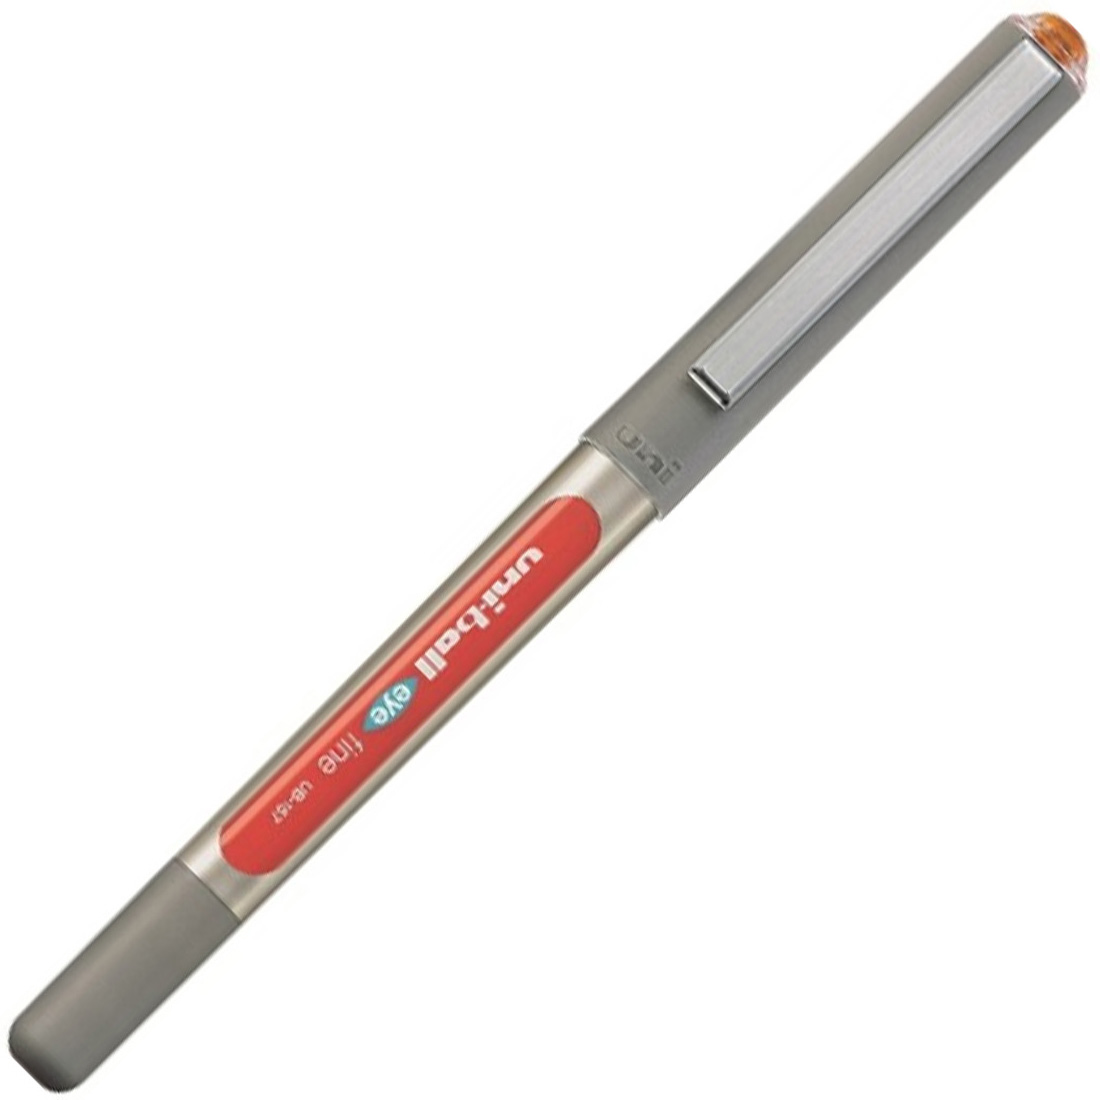 قلم حبر سايل يوني بول، 7 ملم، برتقالي، Ub-157